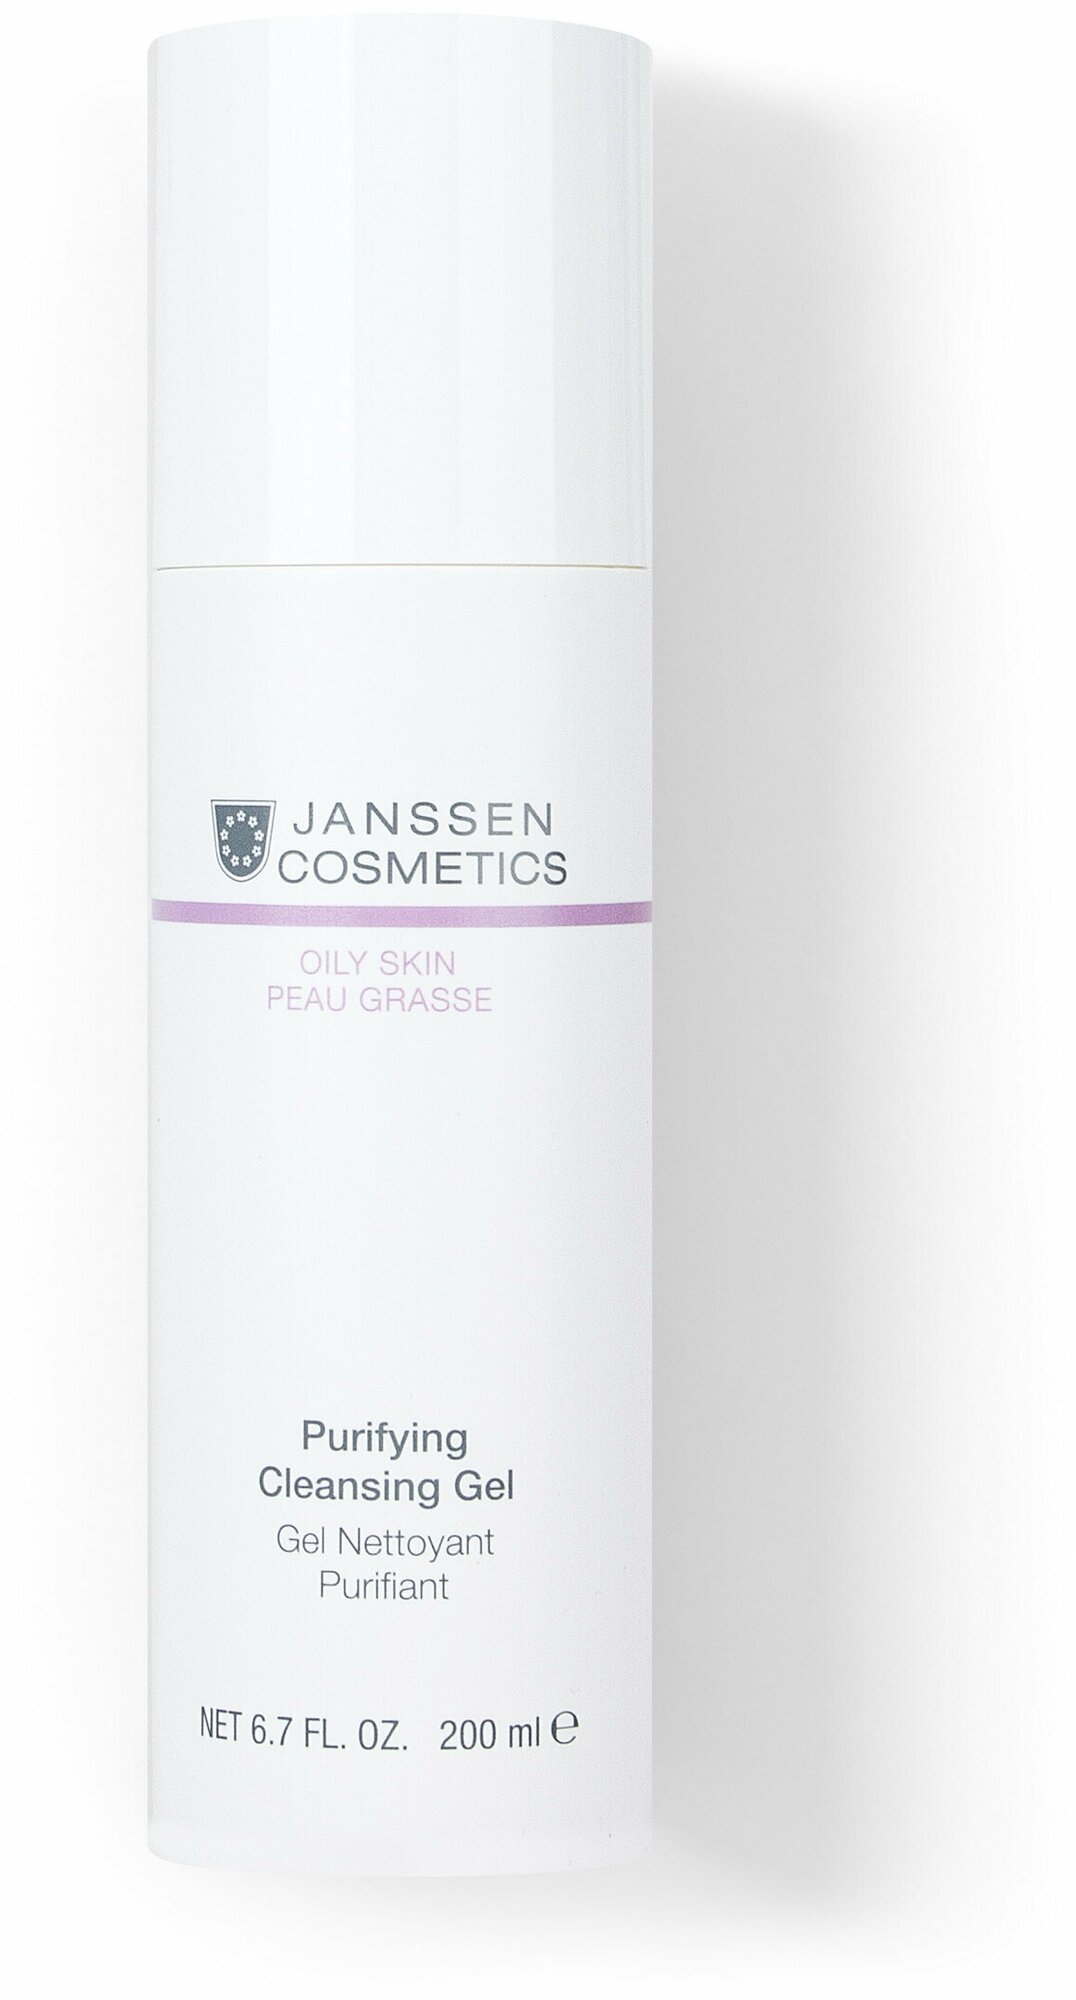 Janssen Cosmetics, Очищающий гель для умывания Clarifying Cleansing Gel, 200 мл.